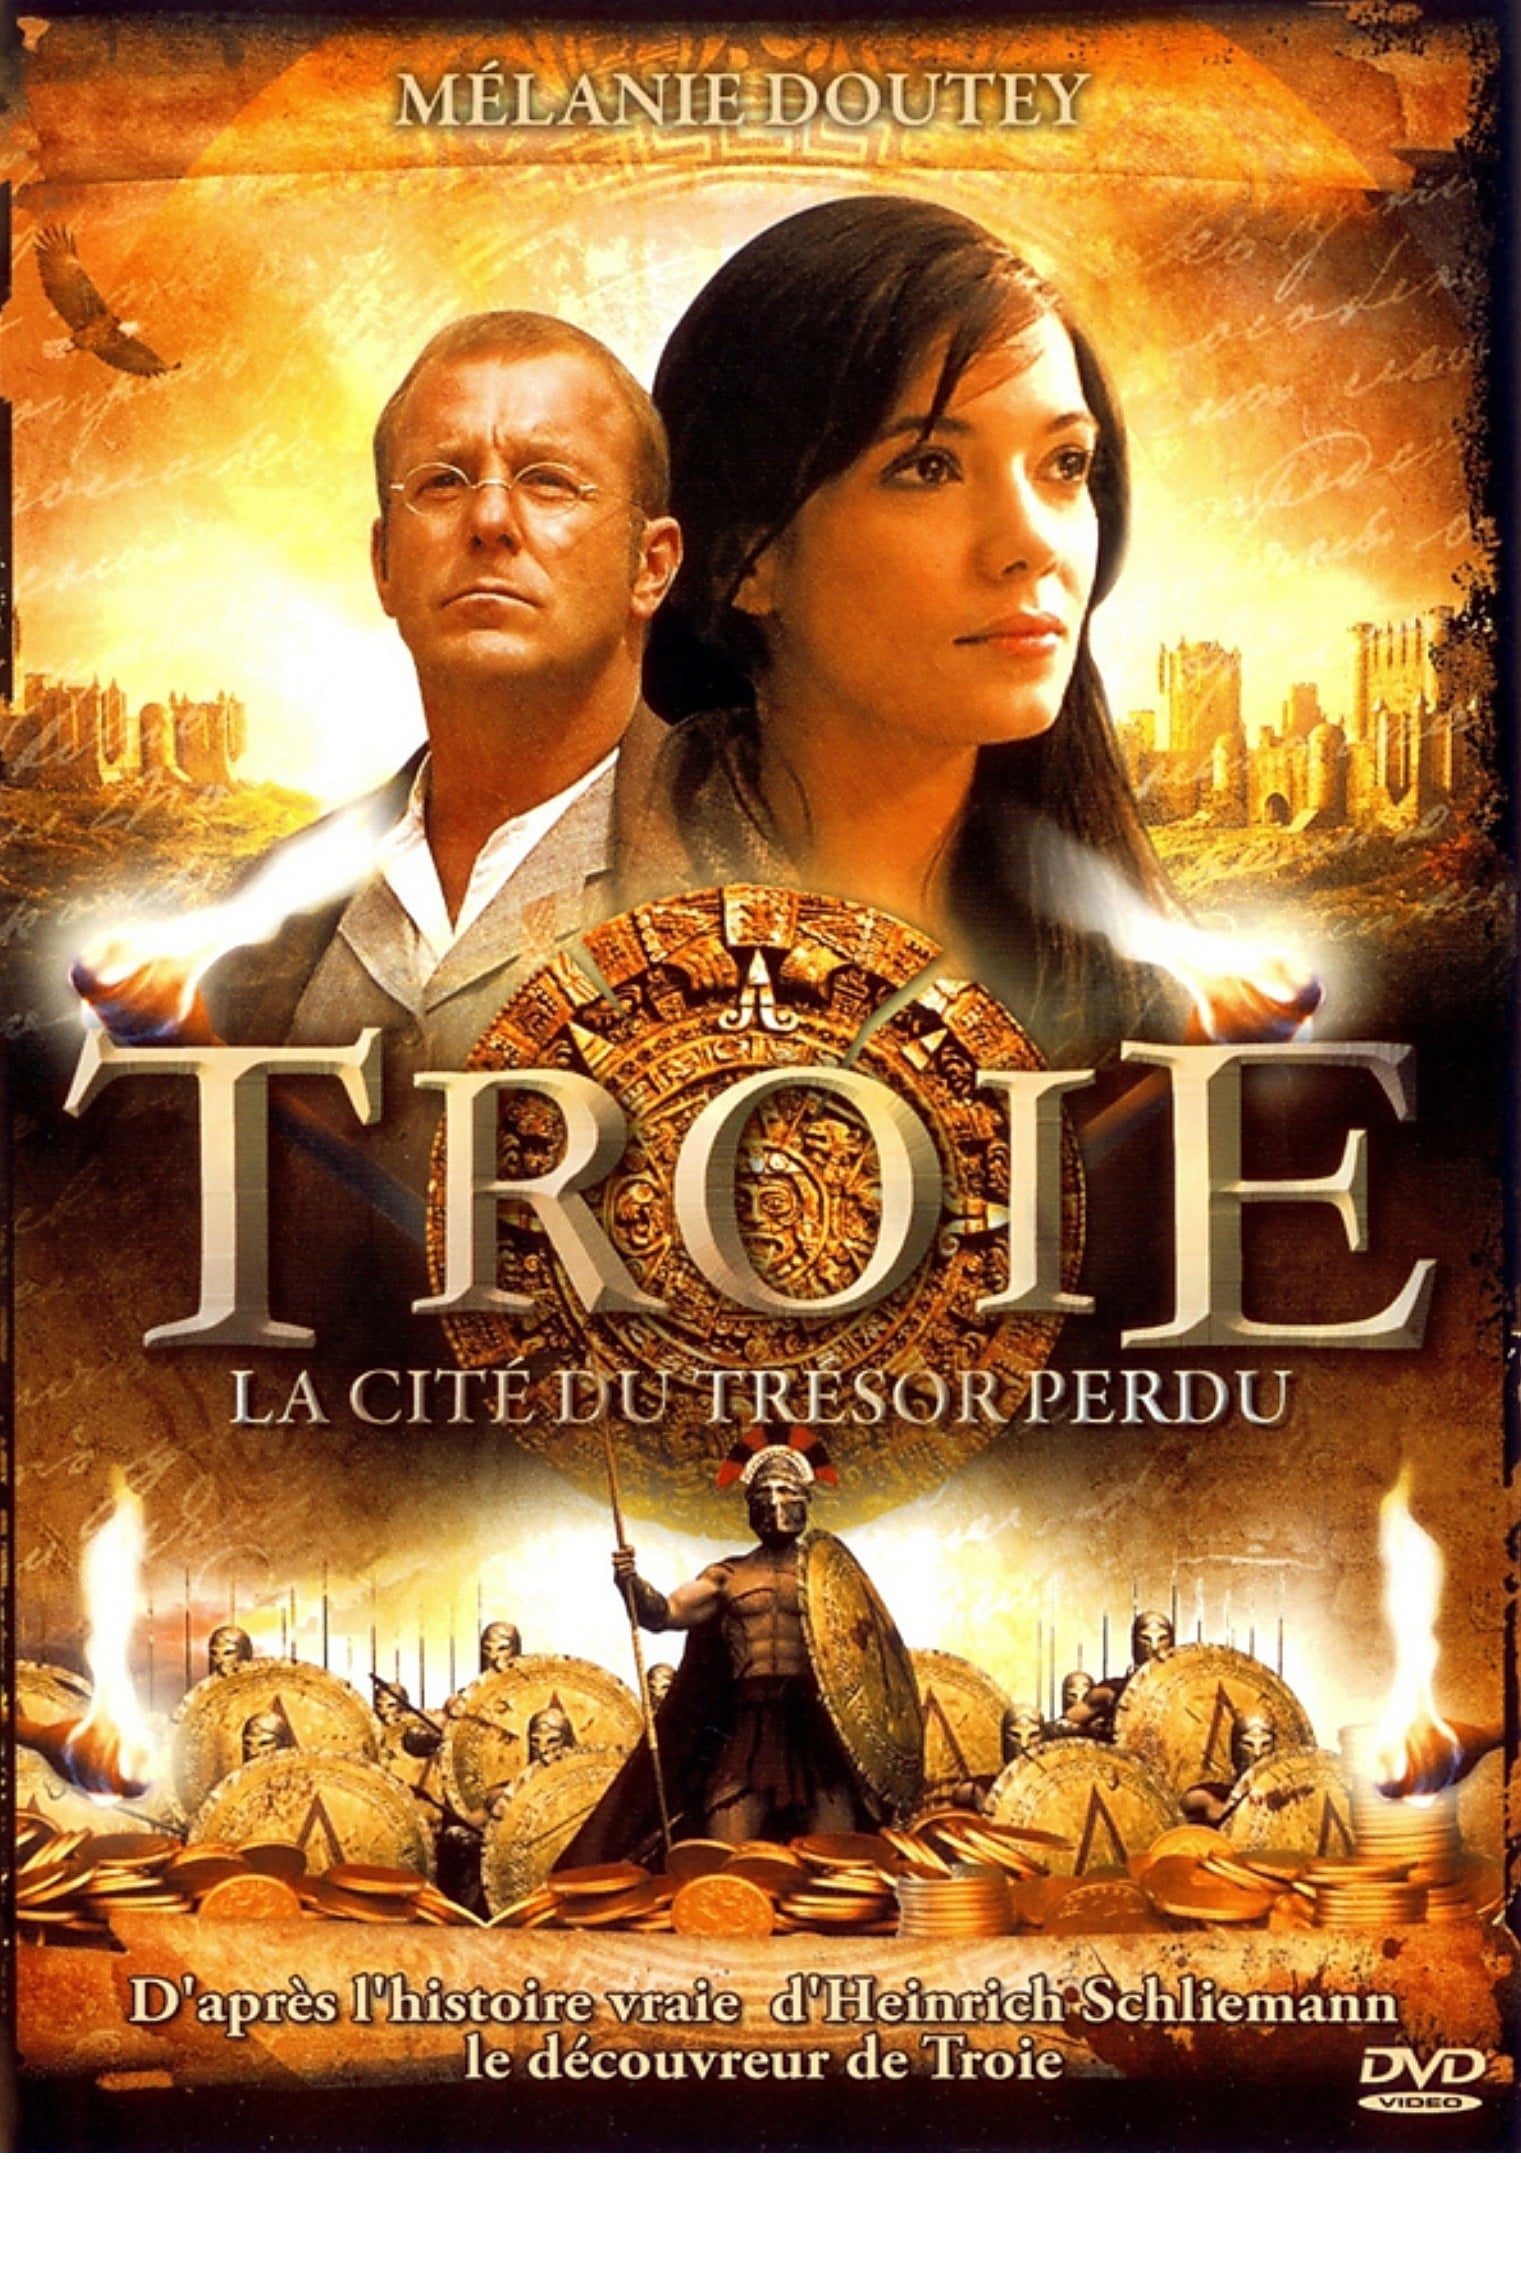 Caçadores de Tróia (2007)